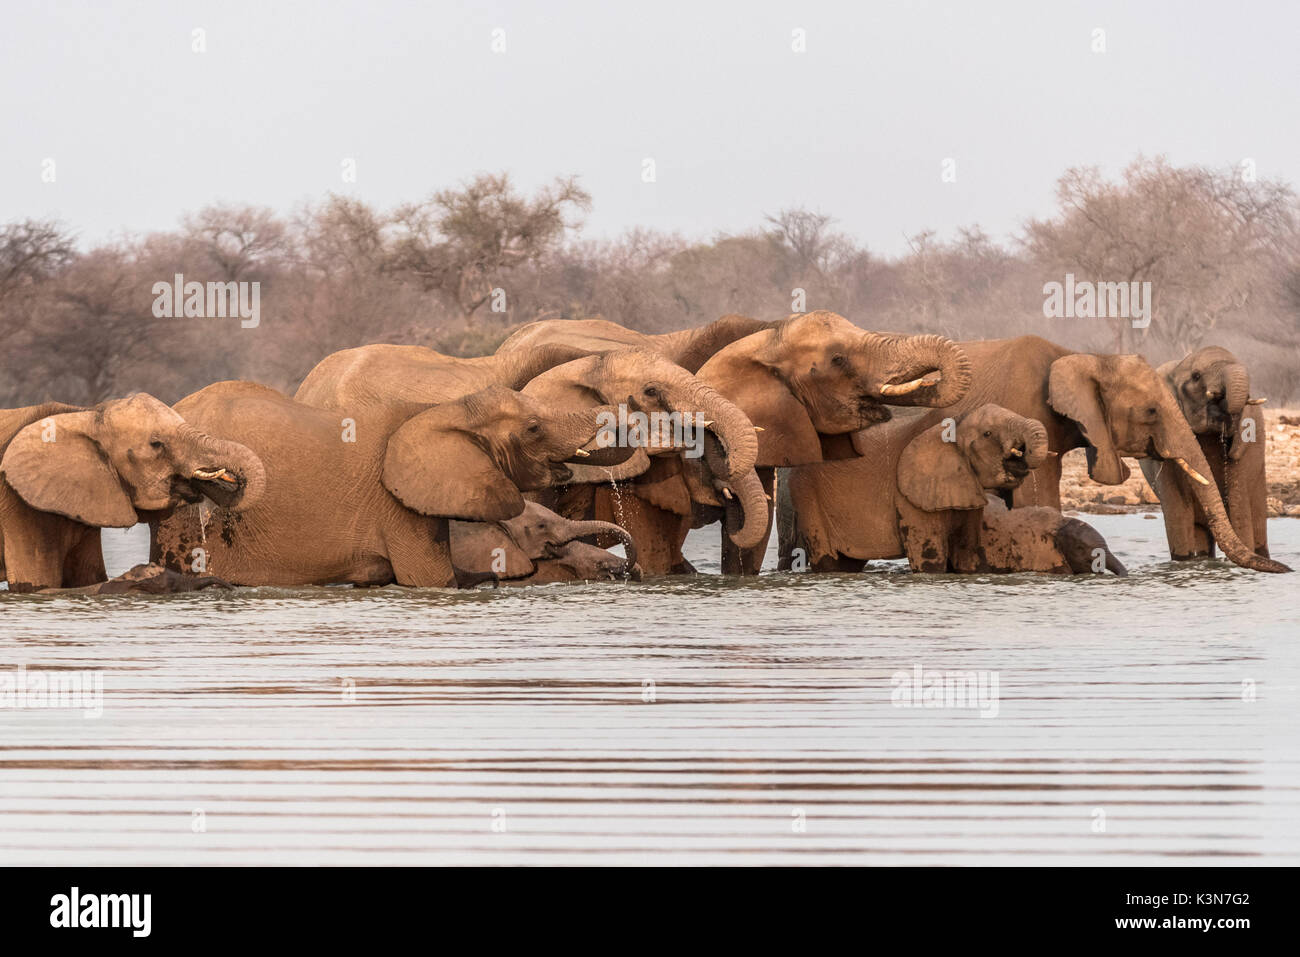 Herd of elephants drinking water. Etosha National Park, Oshikoto region, Namibia. Stock Photo